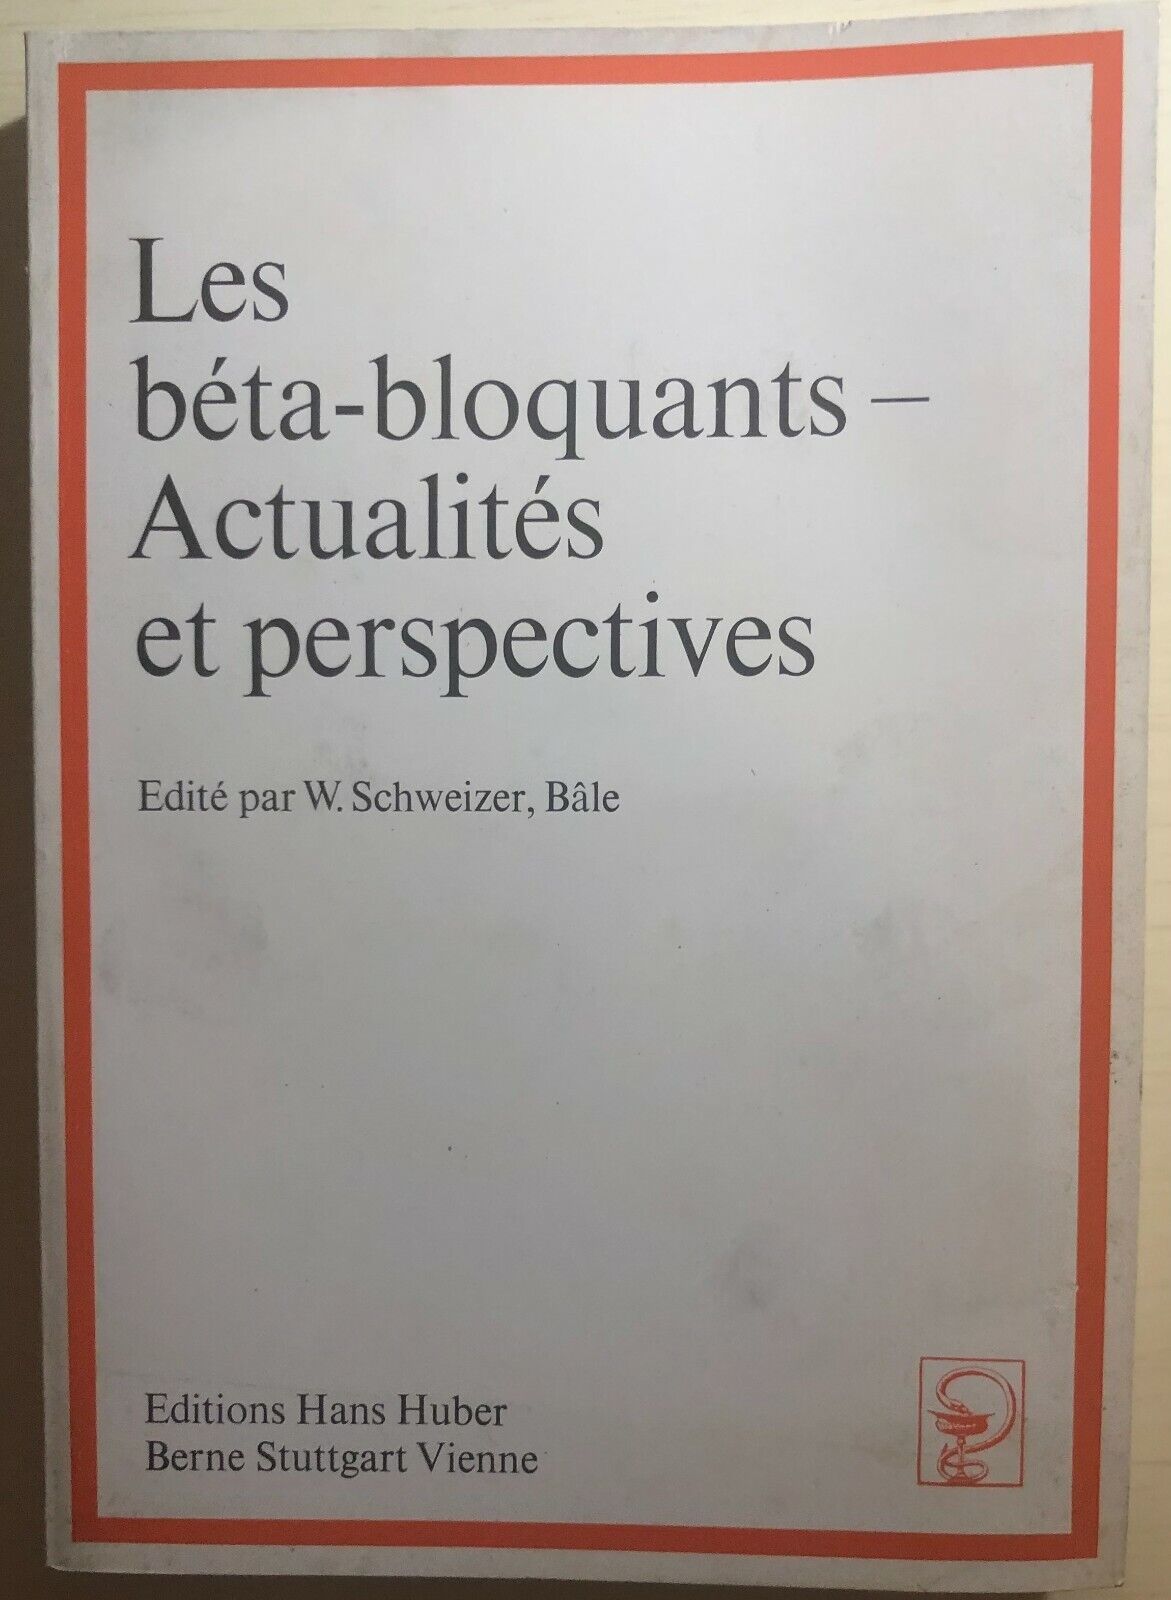 Les b?ta-bloquants - Actualit?s et perspectives di Aa.vv.,  1976,  Editions Hans